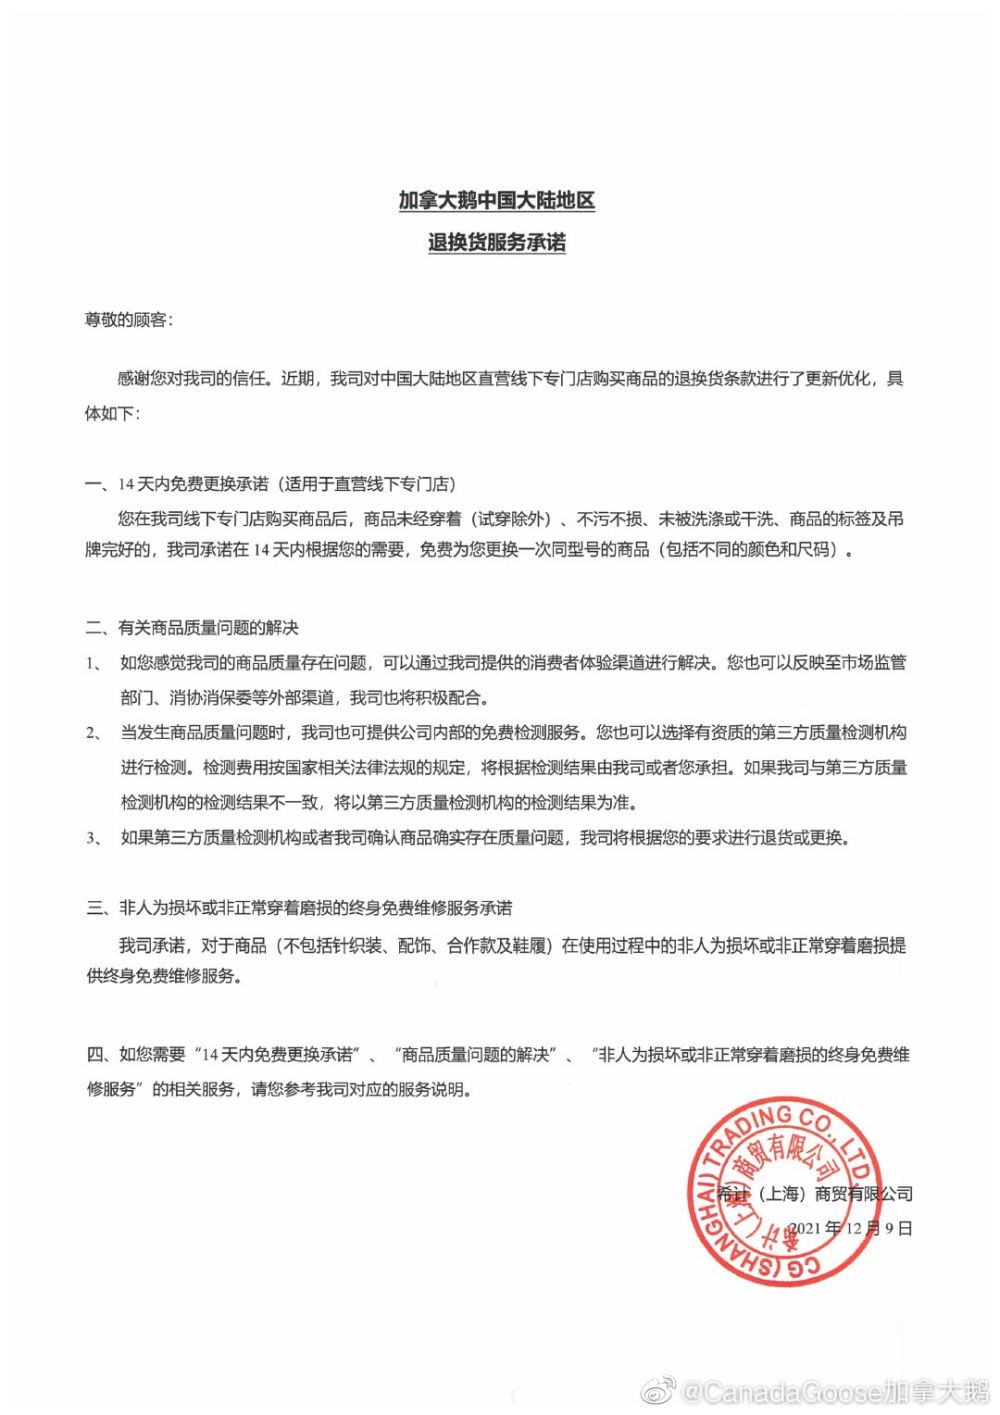 加拿大鹅优化中国大陆地区退换货服务承诺 为消费者提供细致售后指引